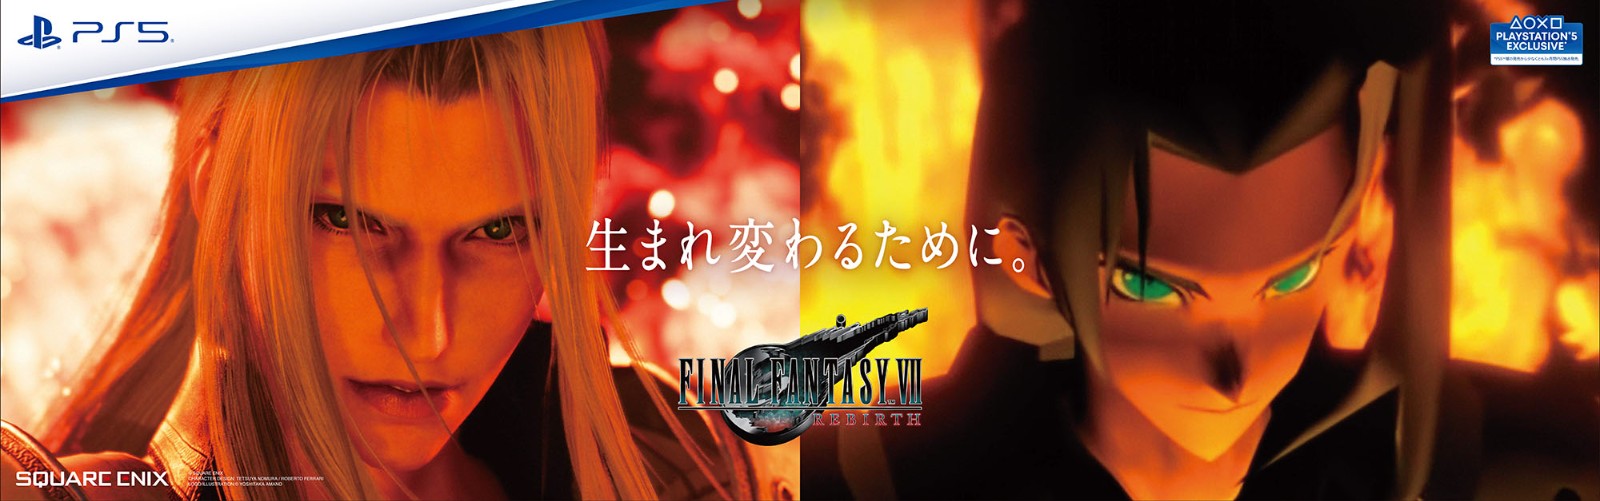 《最终幻想7：重生》发售在即 惯例痛地铁宣传策划再次袭来